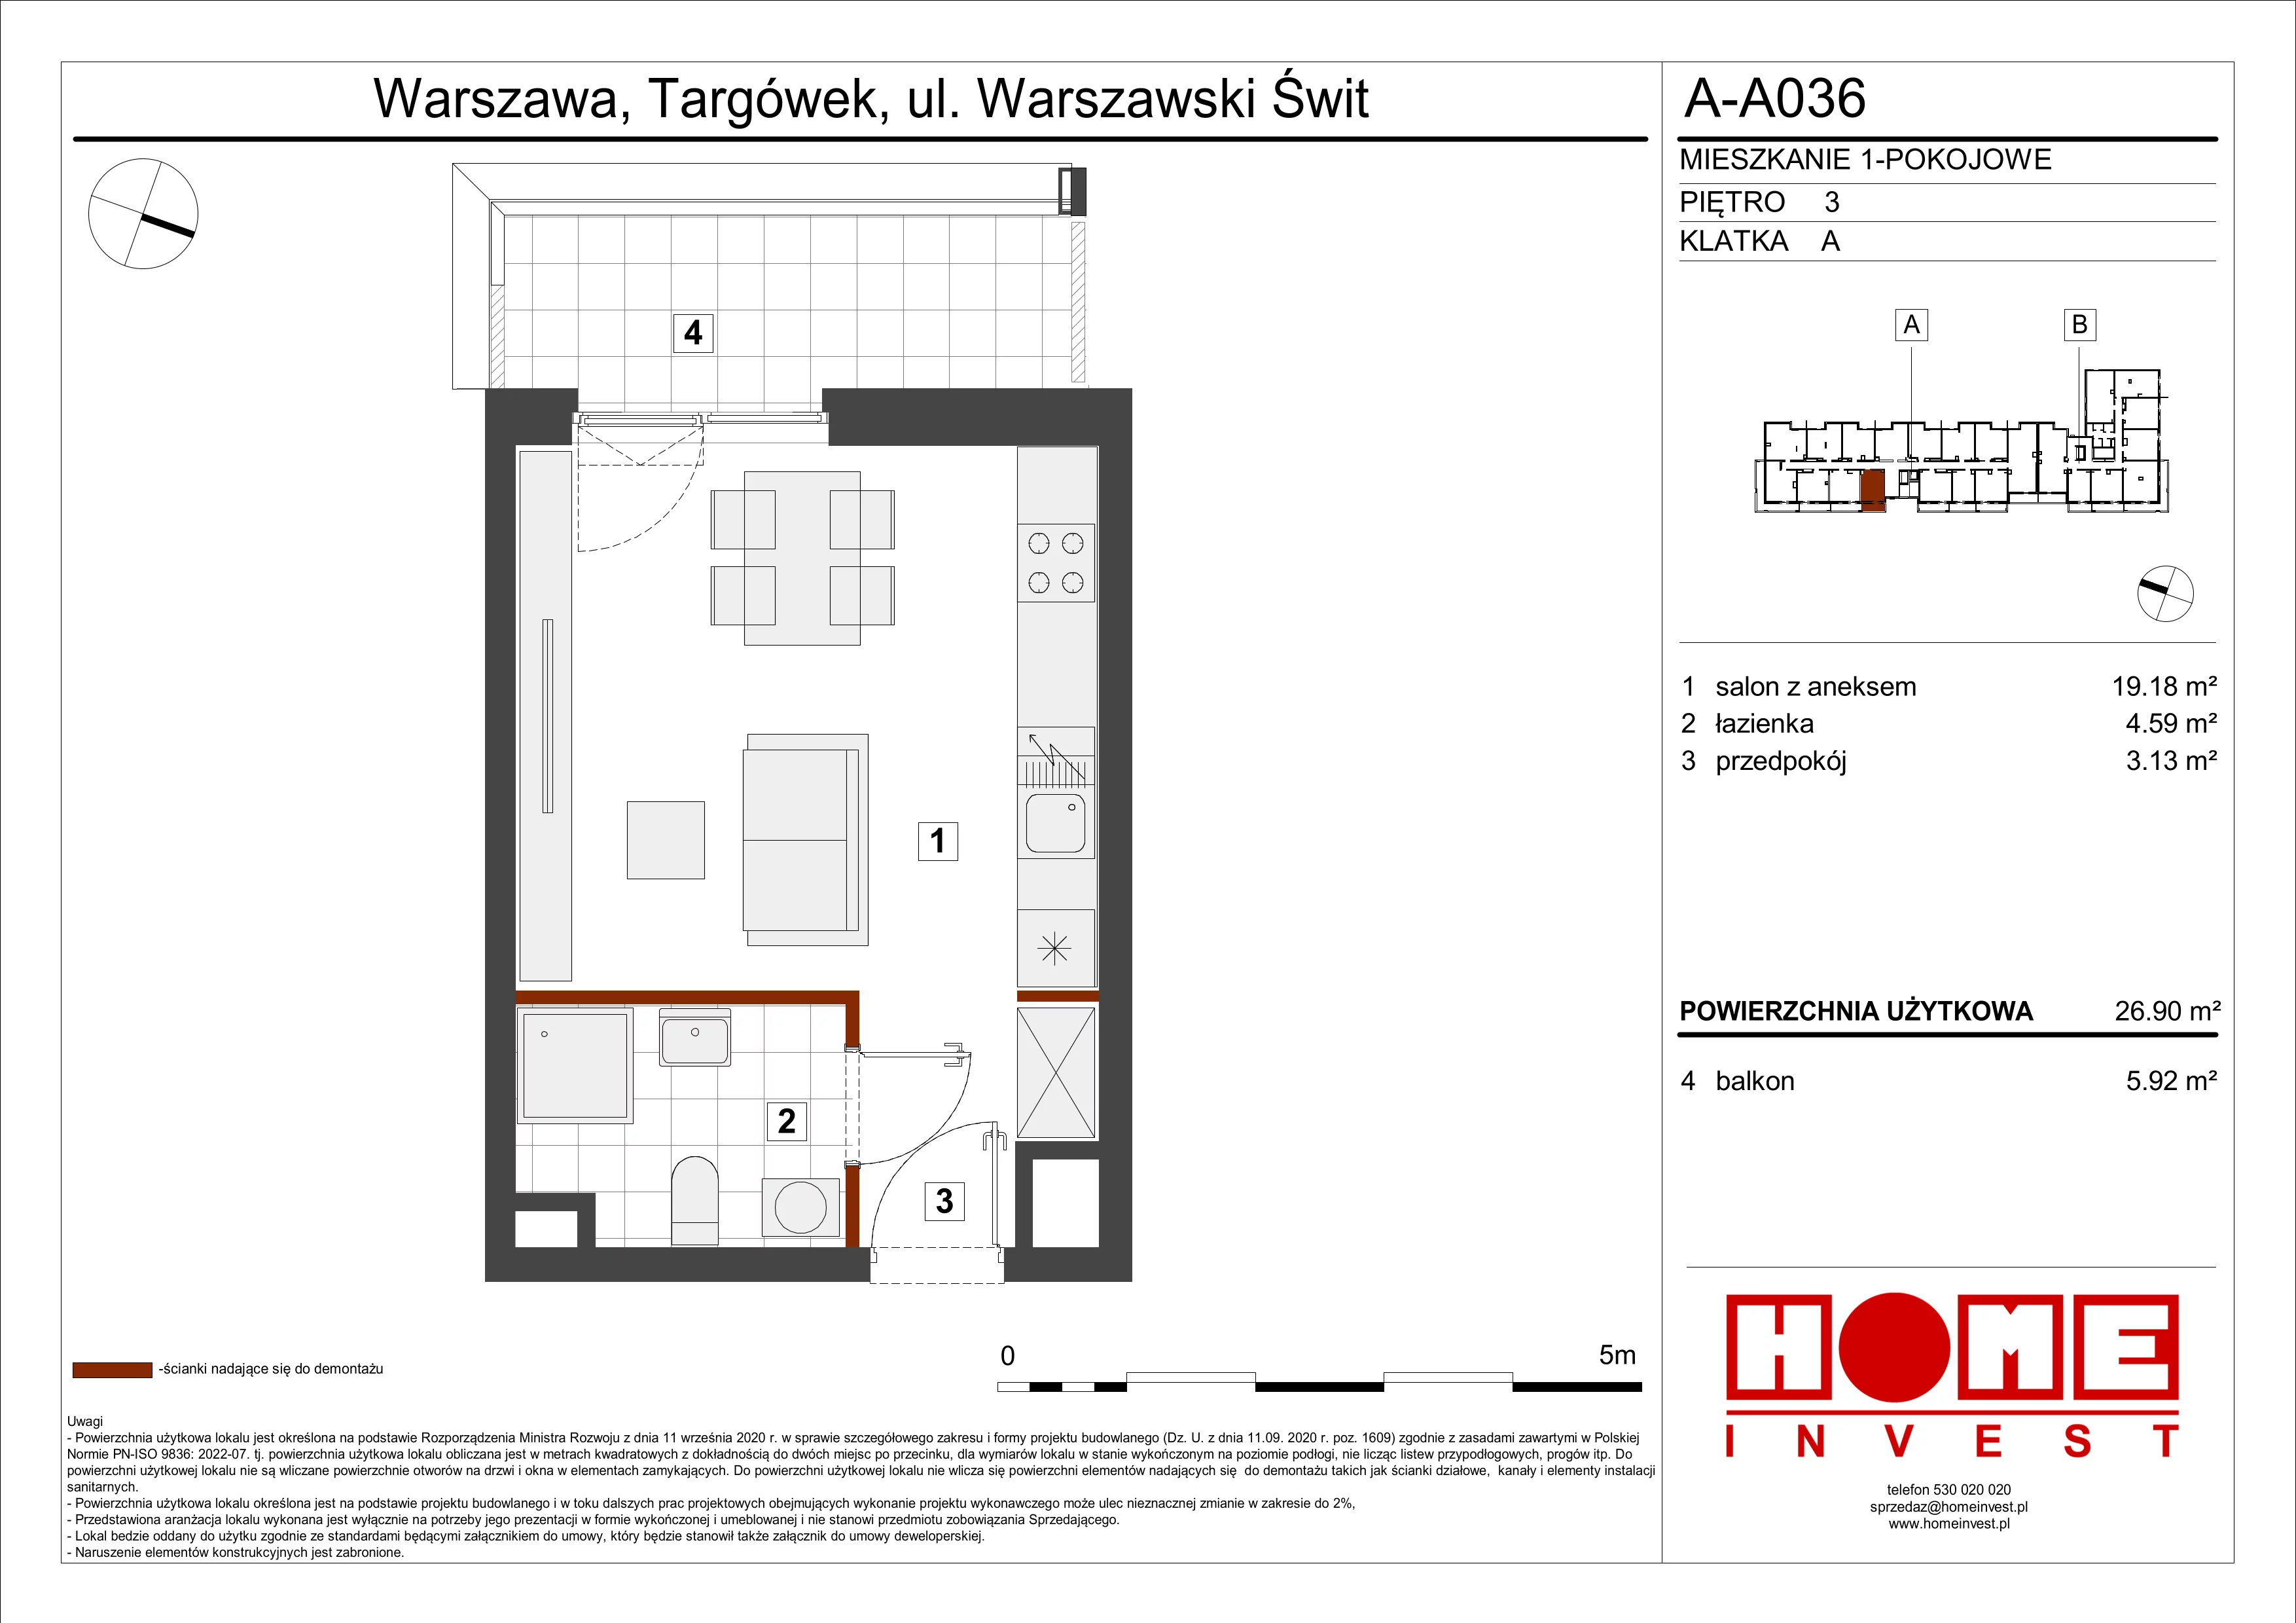 Mieszkanie 26,90 m², piętro 3, oferta nr A-A036, Warszawski Świt, Warszawa, Targówek, Bródno, ul. Warszawski Świt 5